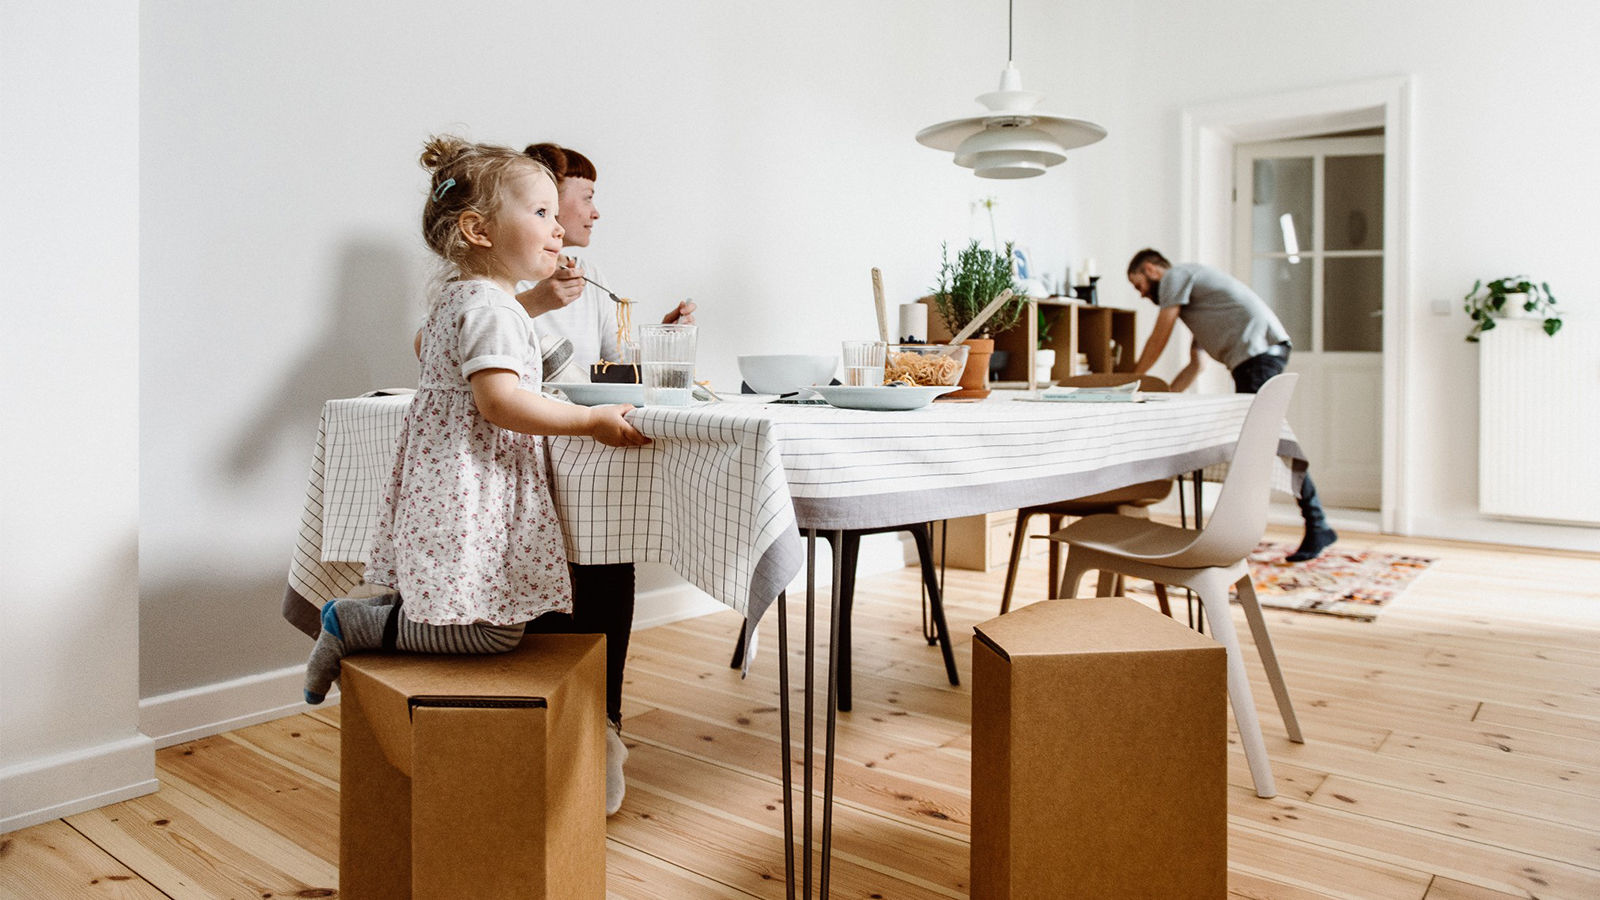 Familie am Küchentisch sitzt auf Hockern aus Pappe